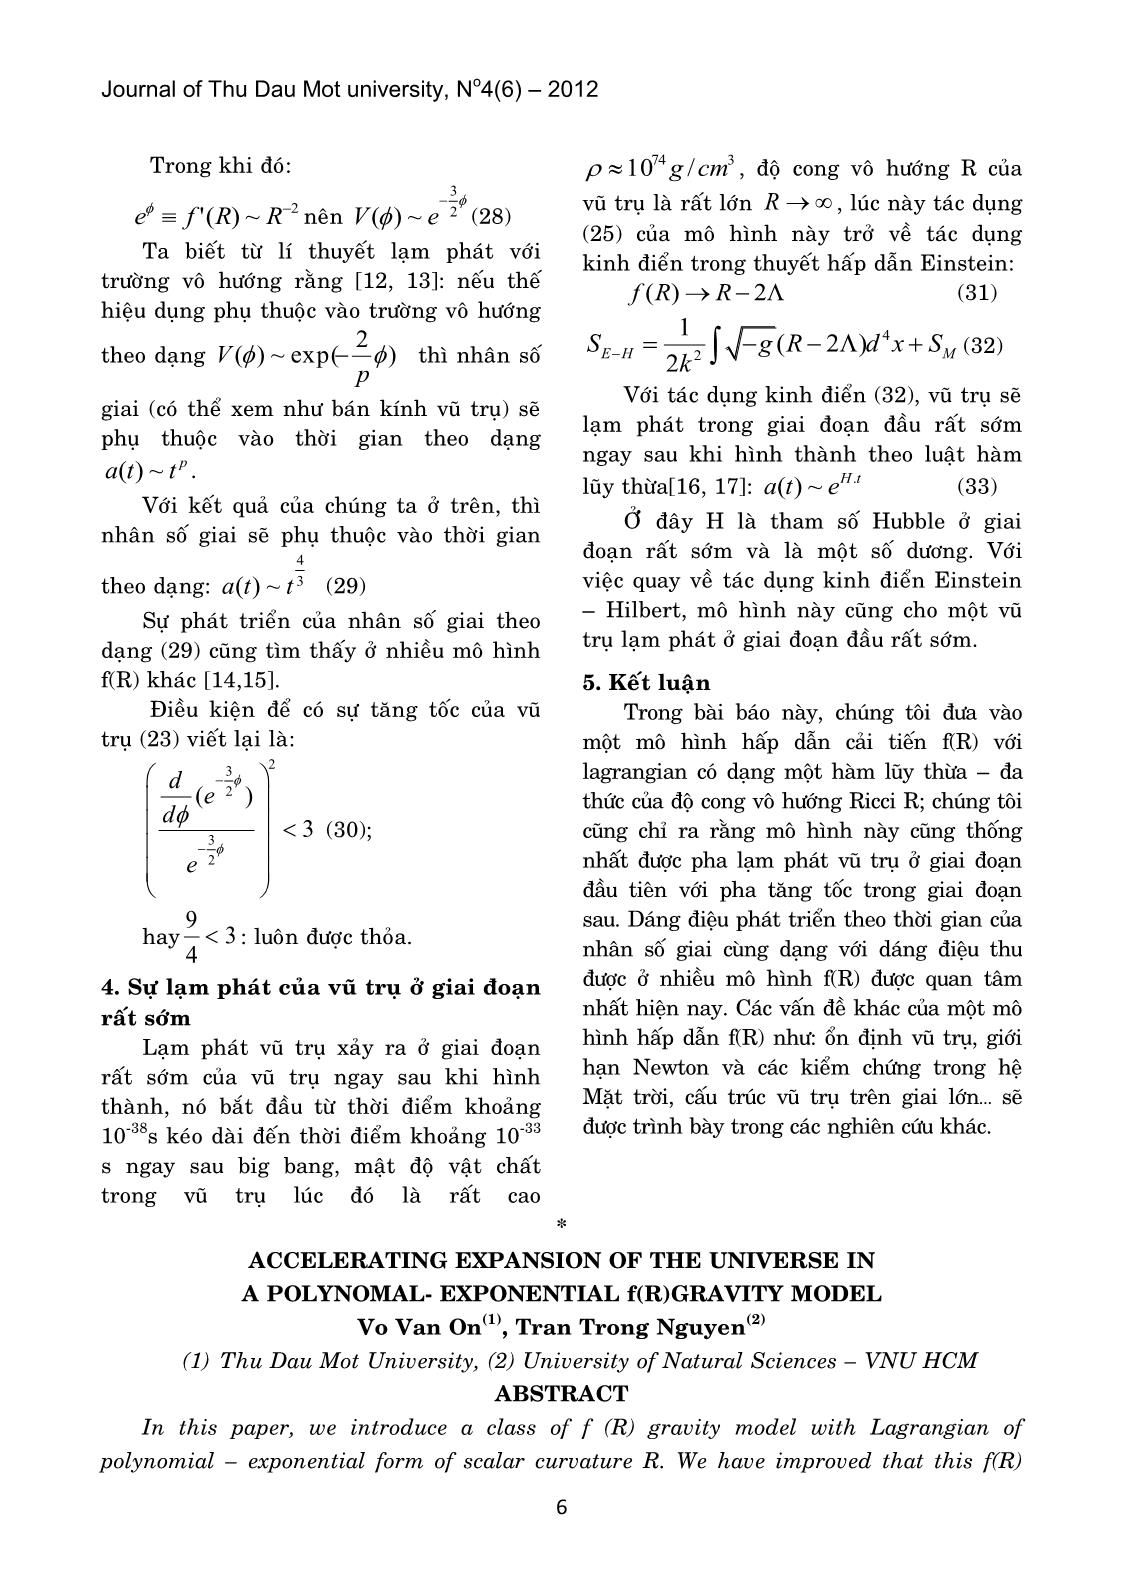 Sự giãn nở tăng tốc của vũ trụ trong mô hình hấp dẫn F(r) dạng hàm mũ - đa thức trang 4